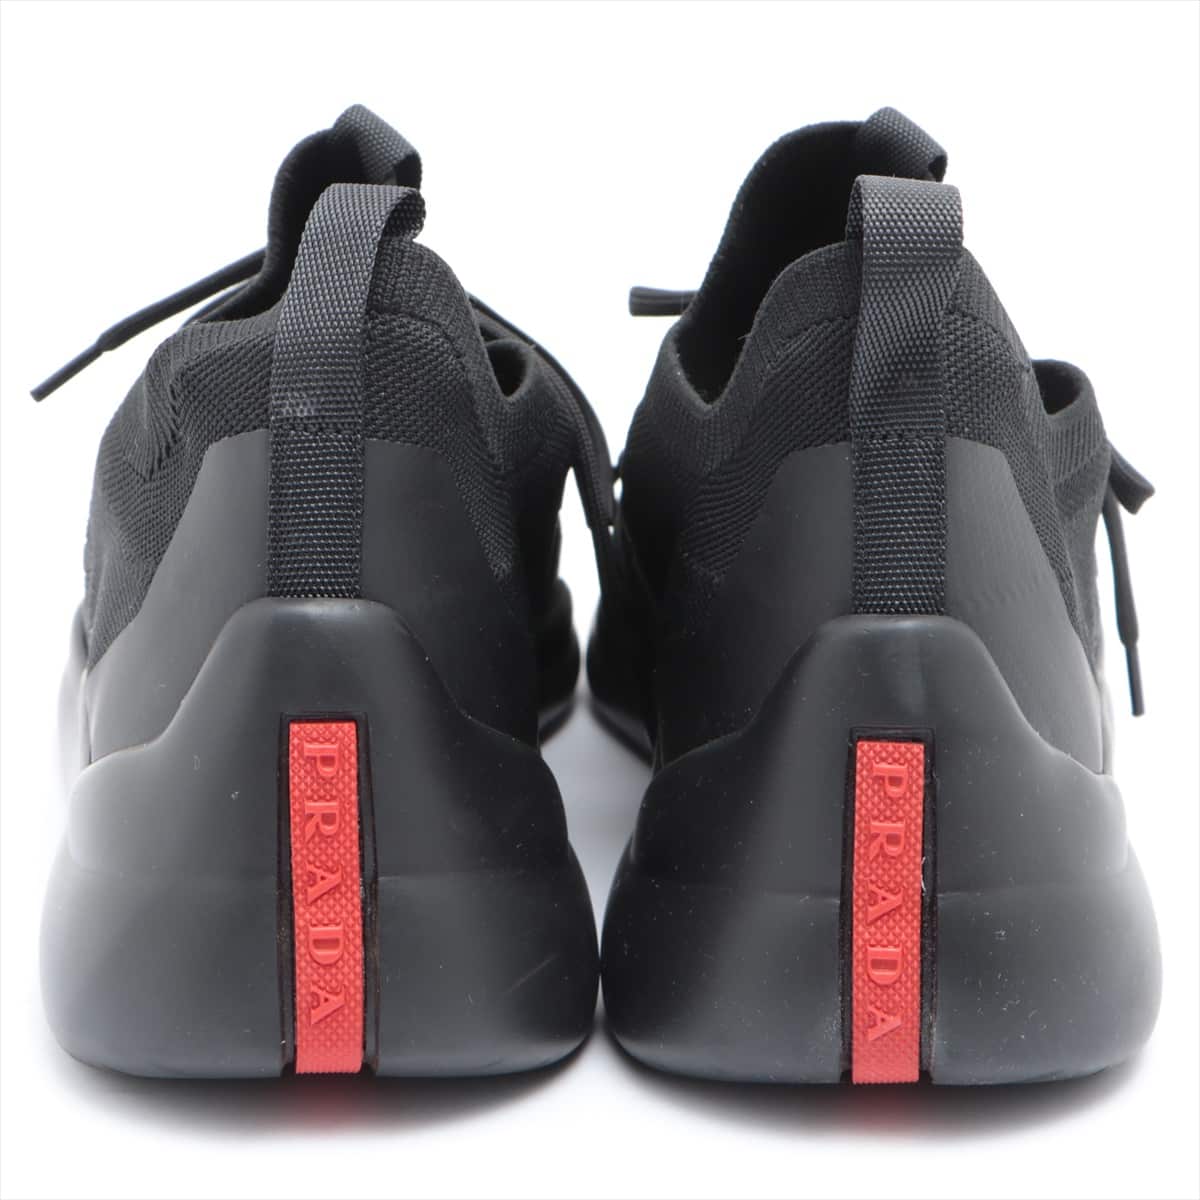 Prada Sport Fabric Sneakers 8 Men's Black